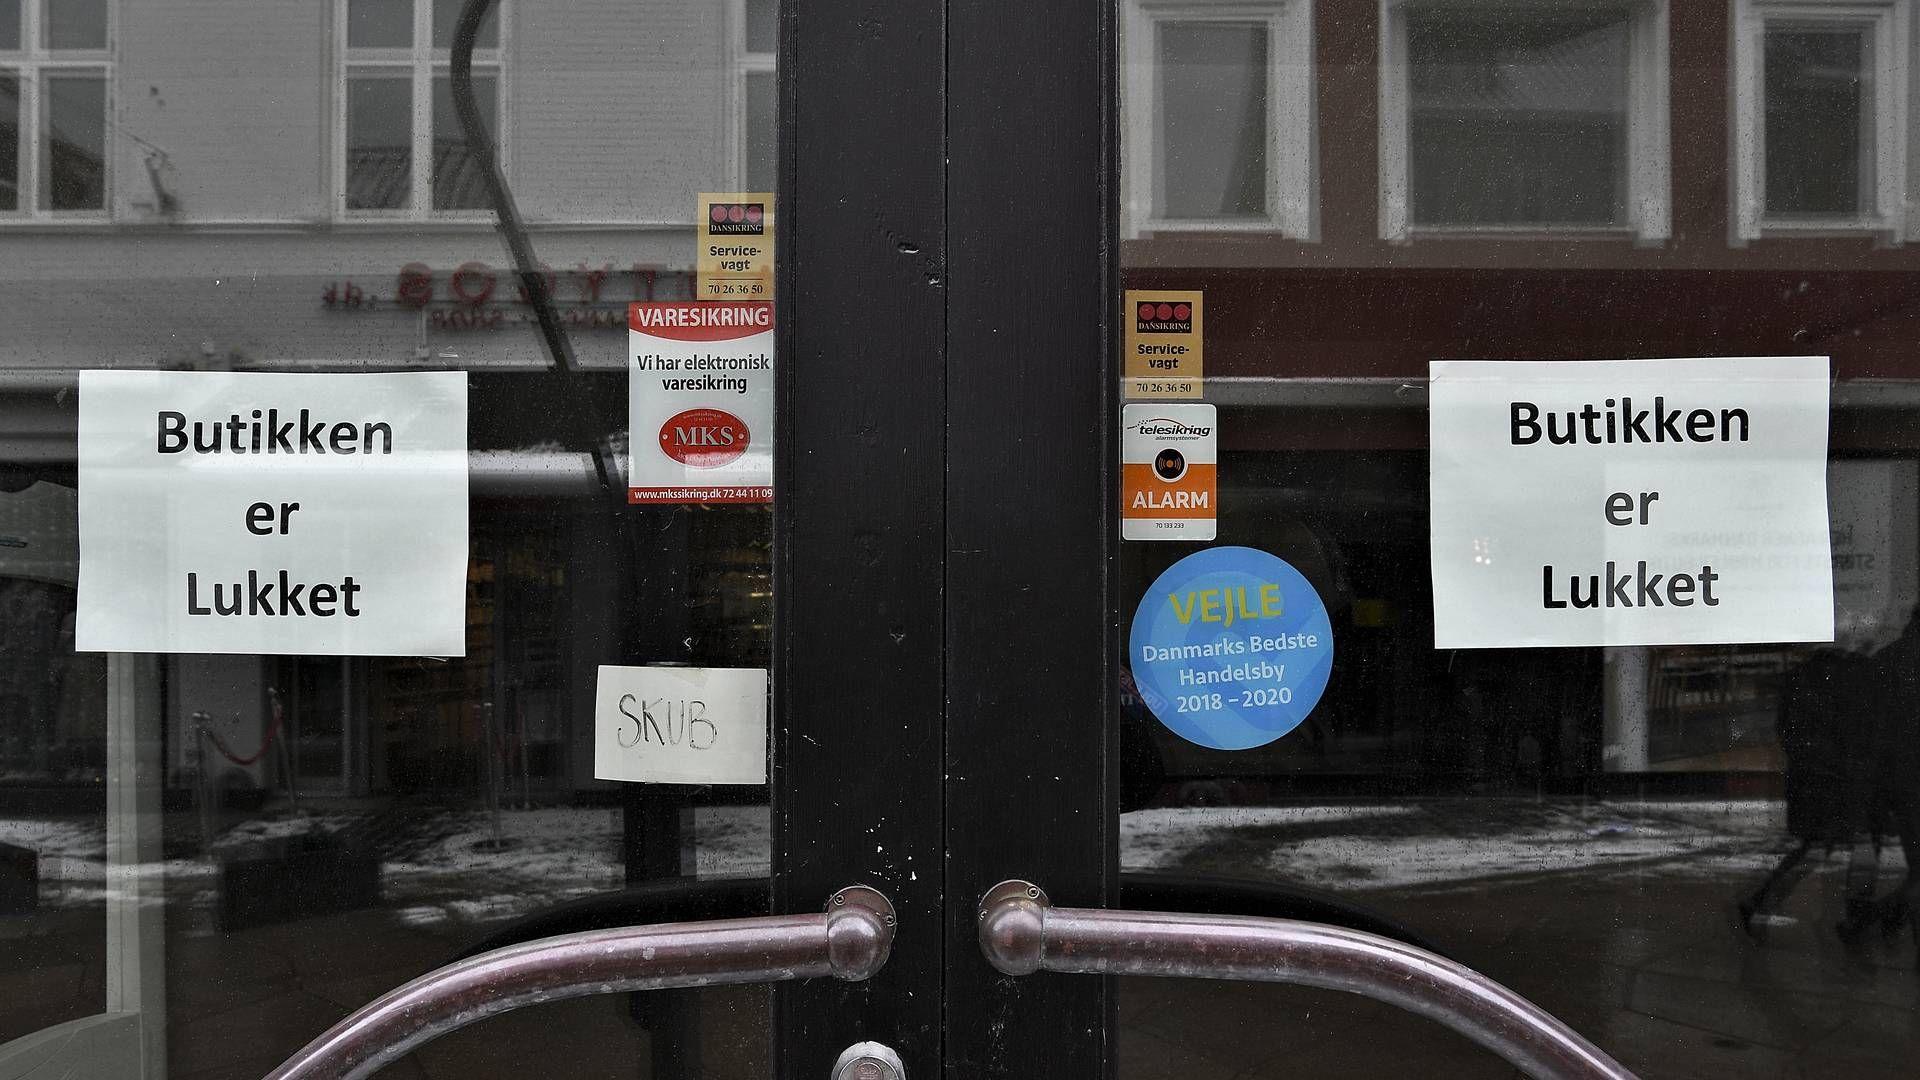 Lukkede butikker har været hverdag under coronakrisen, som har sendt dele af erhvervslivet til tælling. Derfor har Early Warning, der hjælper virksomheder i krise, fået en ekstrabevilling, som blandt andet går til advokatbistand. | Foto: Ernst van Norde